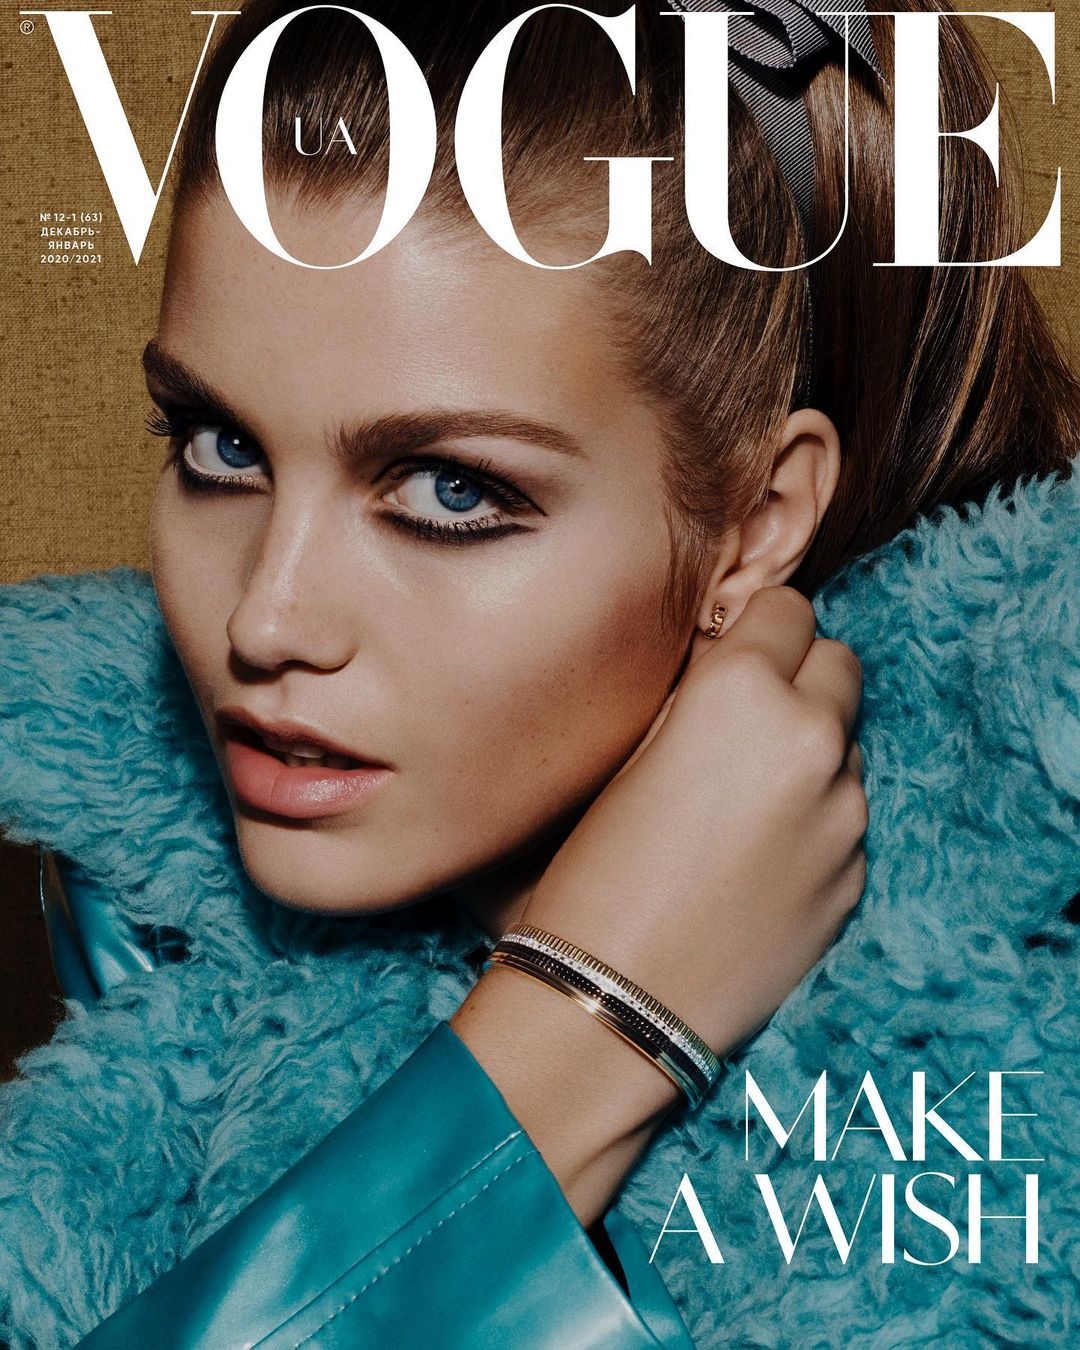 Vogue Ukraine December 2020 Cover Story Editorial